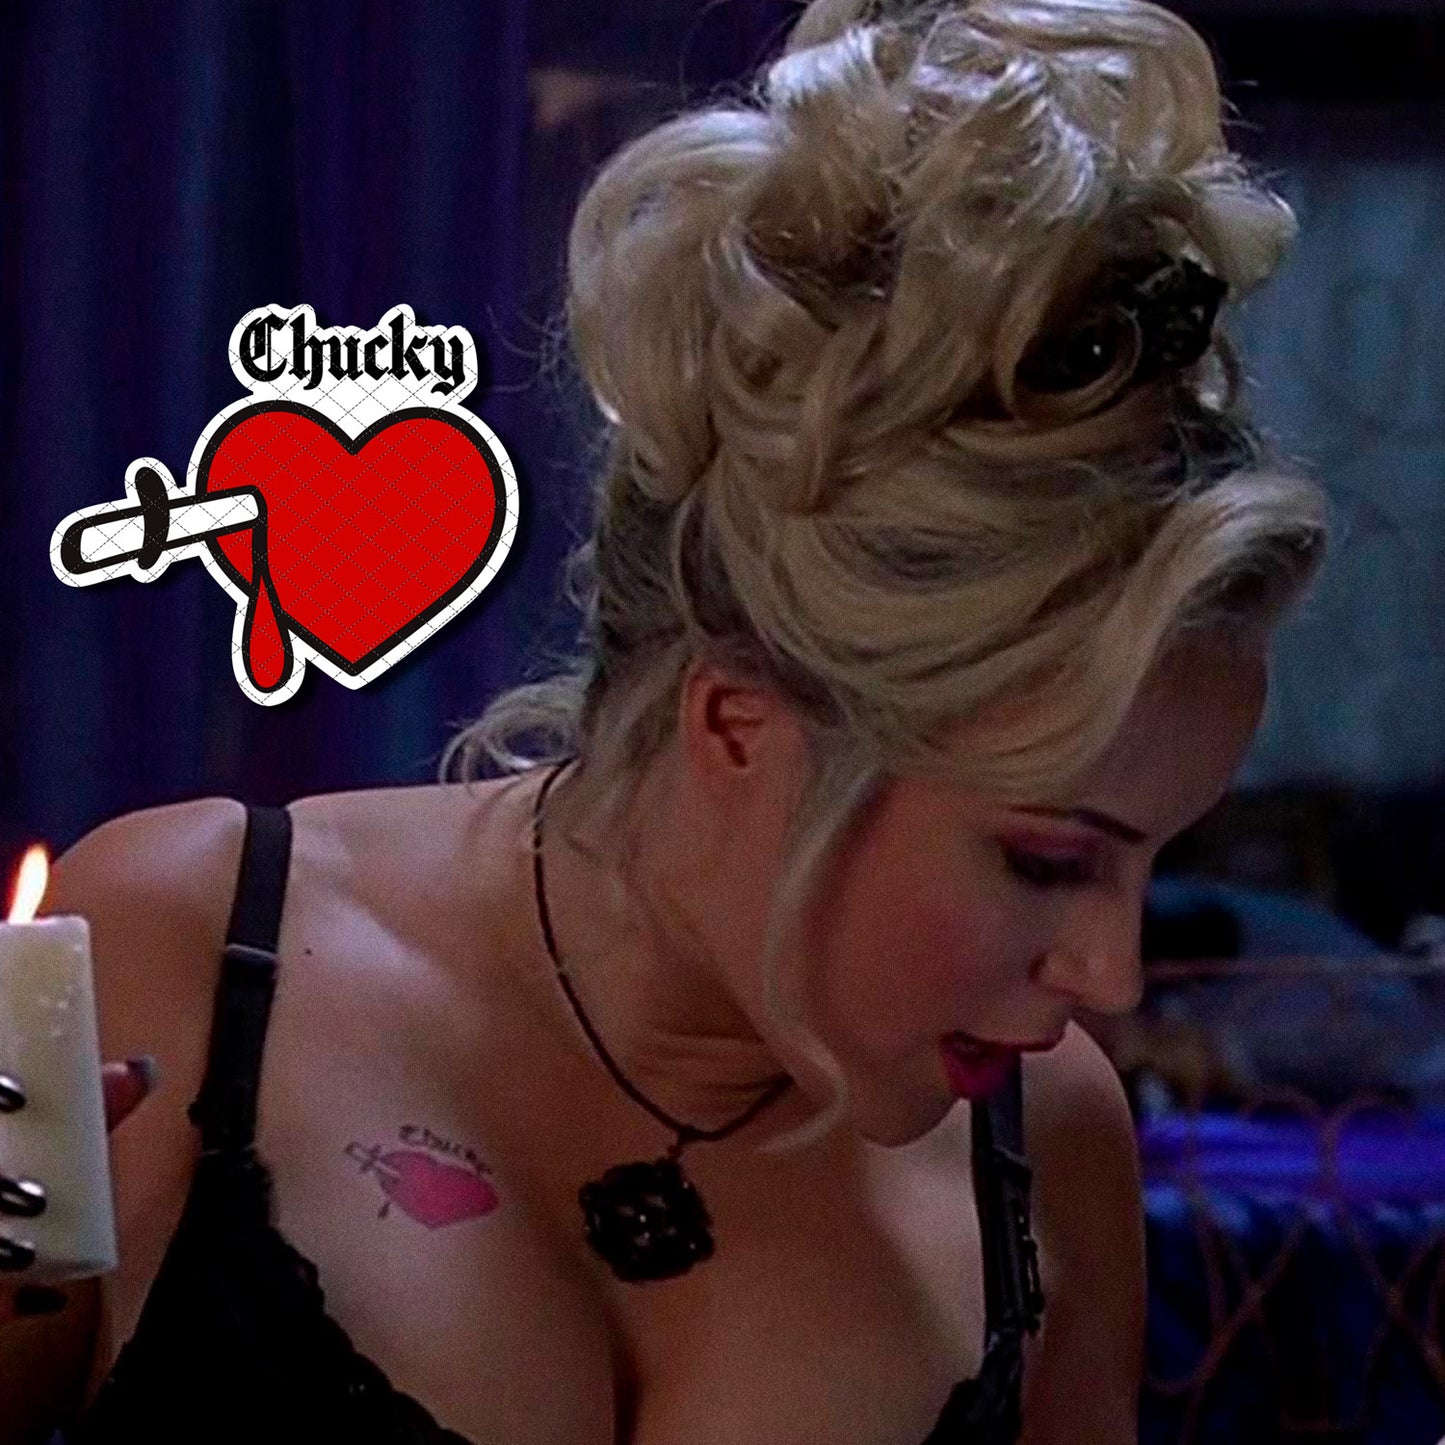 Tiffany Valentine - The Bride of Chucky | Temporary Tattoos | SET OF 2 - AlunaCreates